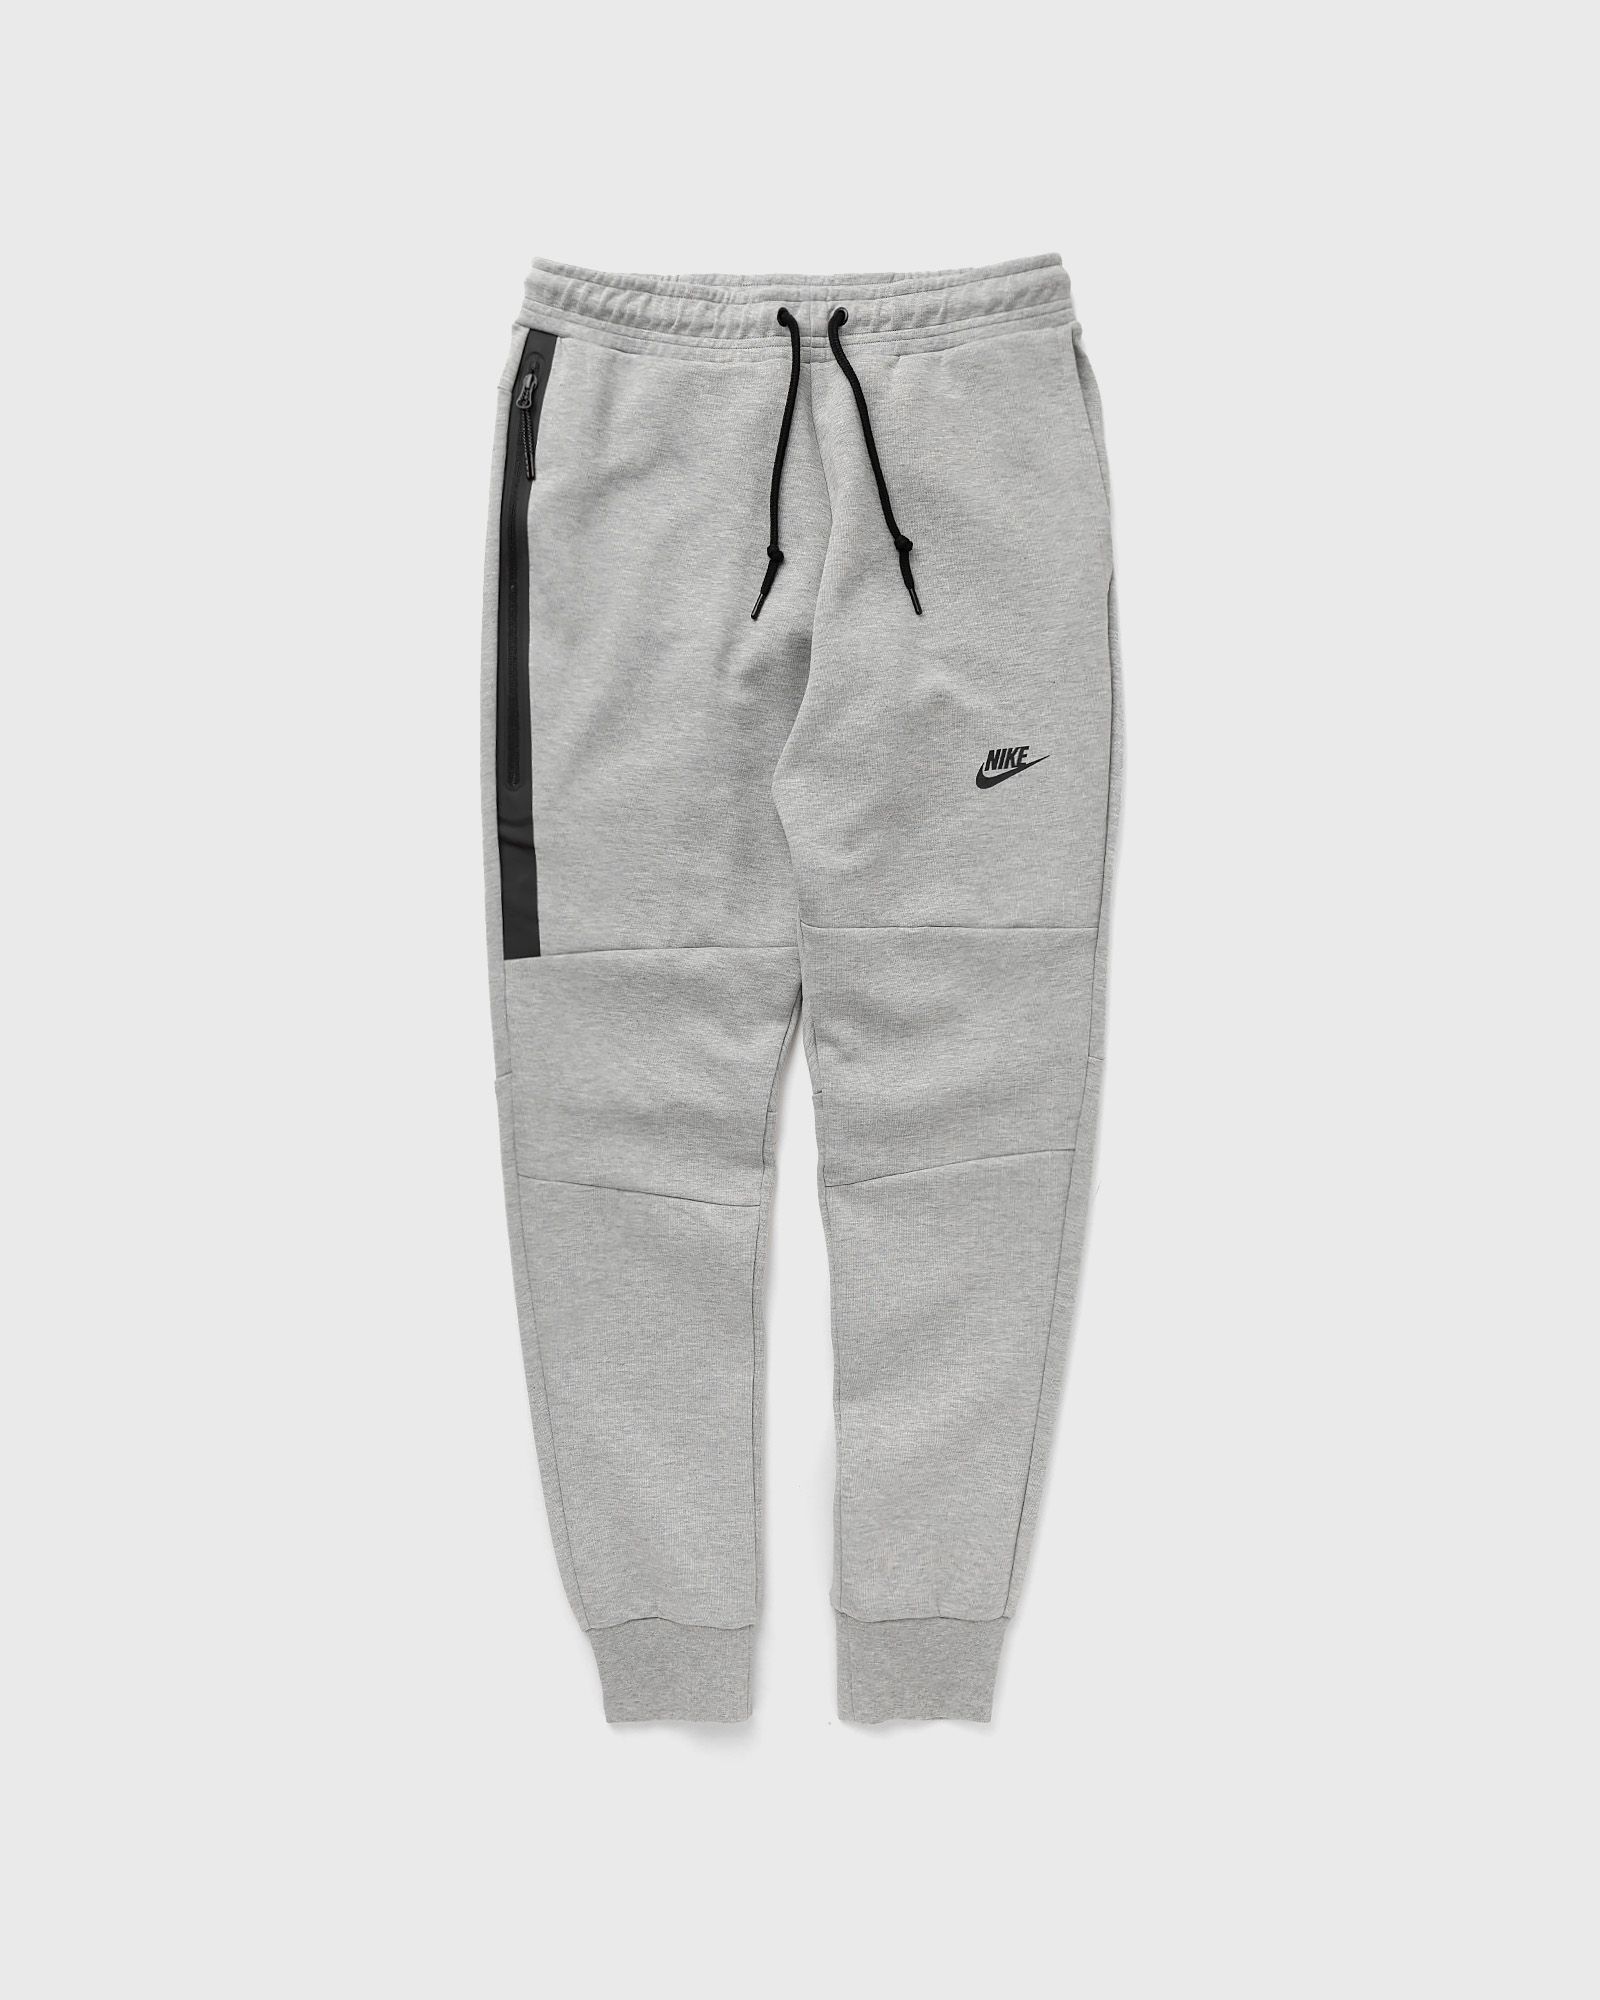 Nike - tech fleece joggers og 10yr men sweatpants grey in größe:xl